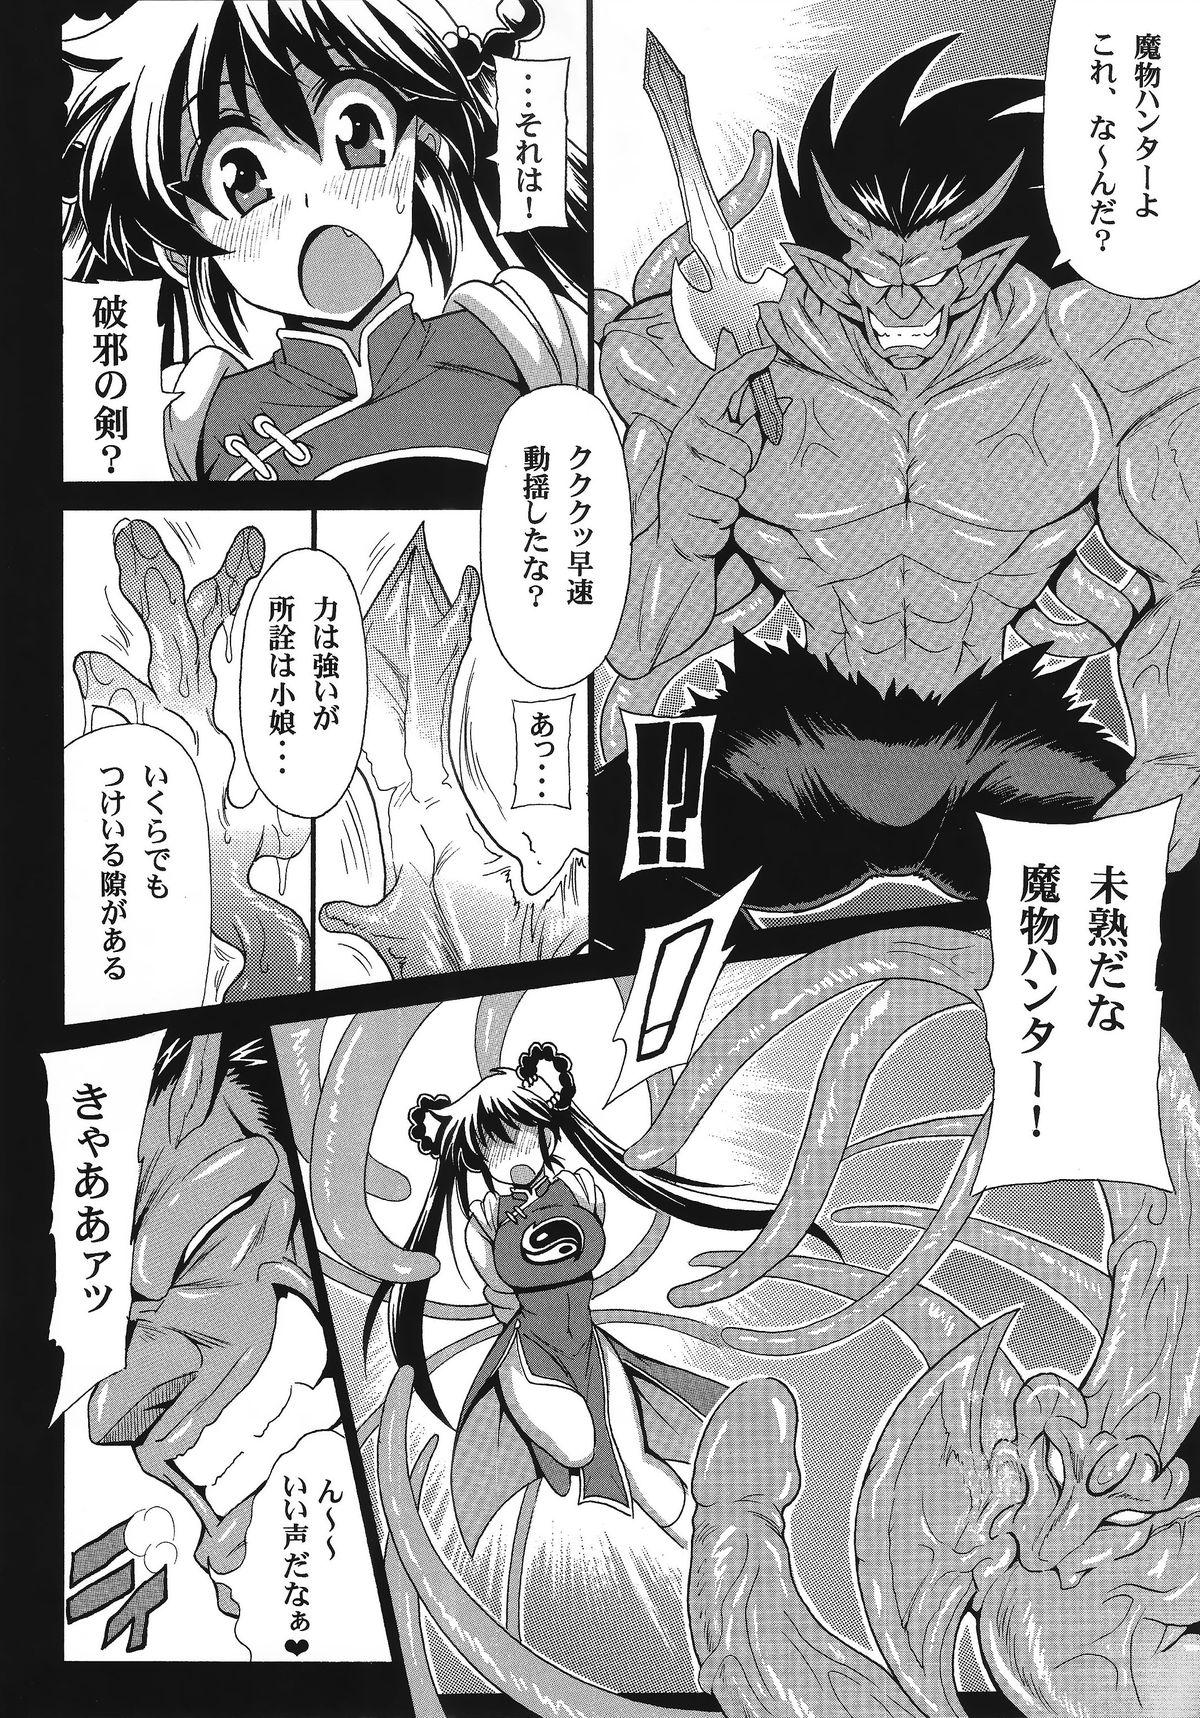 Foreplay Mamono Hunter Inmu no Shou - Dream hunter rem Devil hunter yohko Sucking Cocks - Page 5